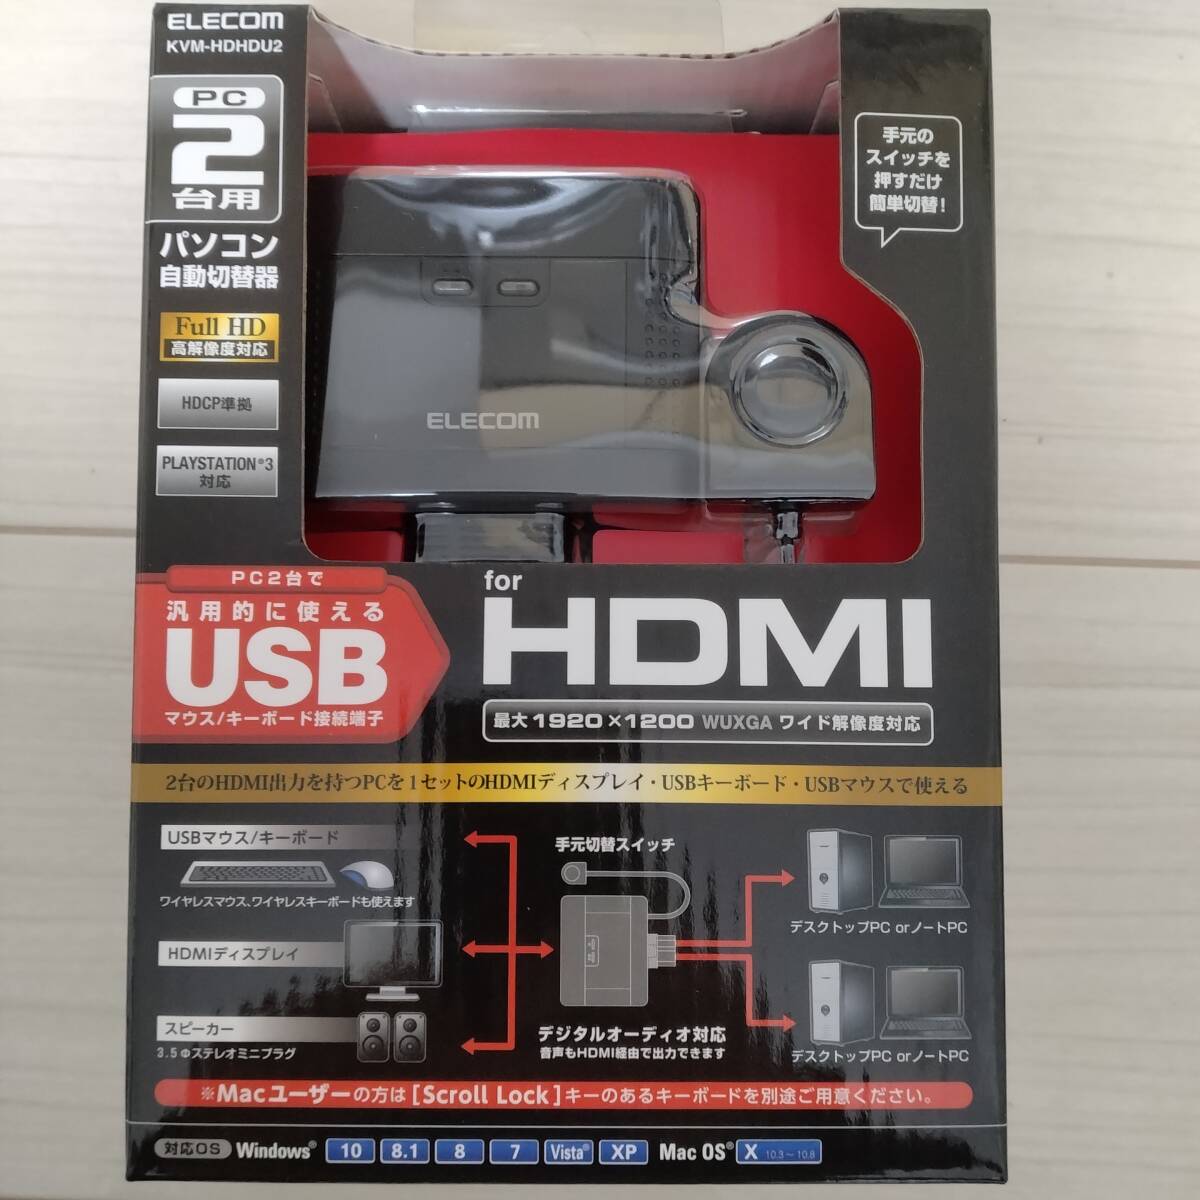 エレコム KVMスイッチ HDMI USB 切替器 スピーカー 手元スイッチ KVM-HDHDU2の画像1